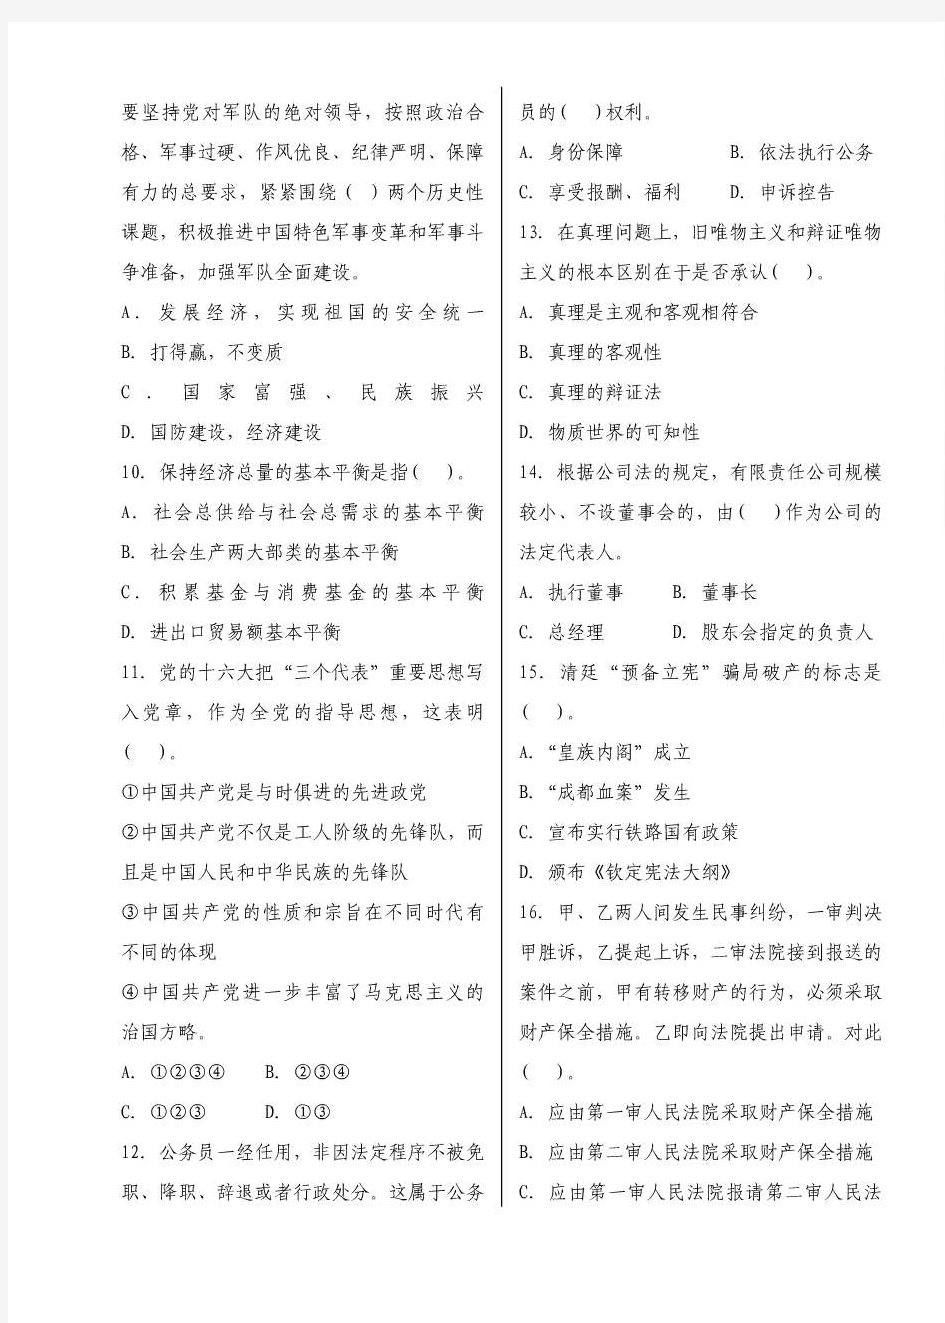 四川省公开选拨副科级干部考试试题